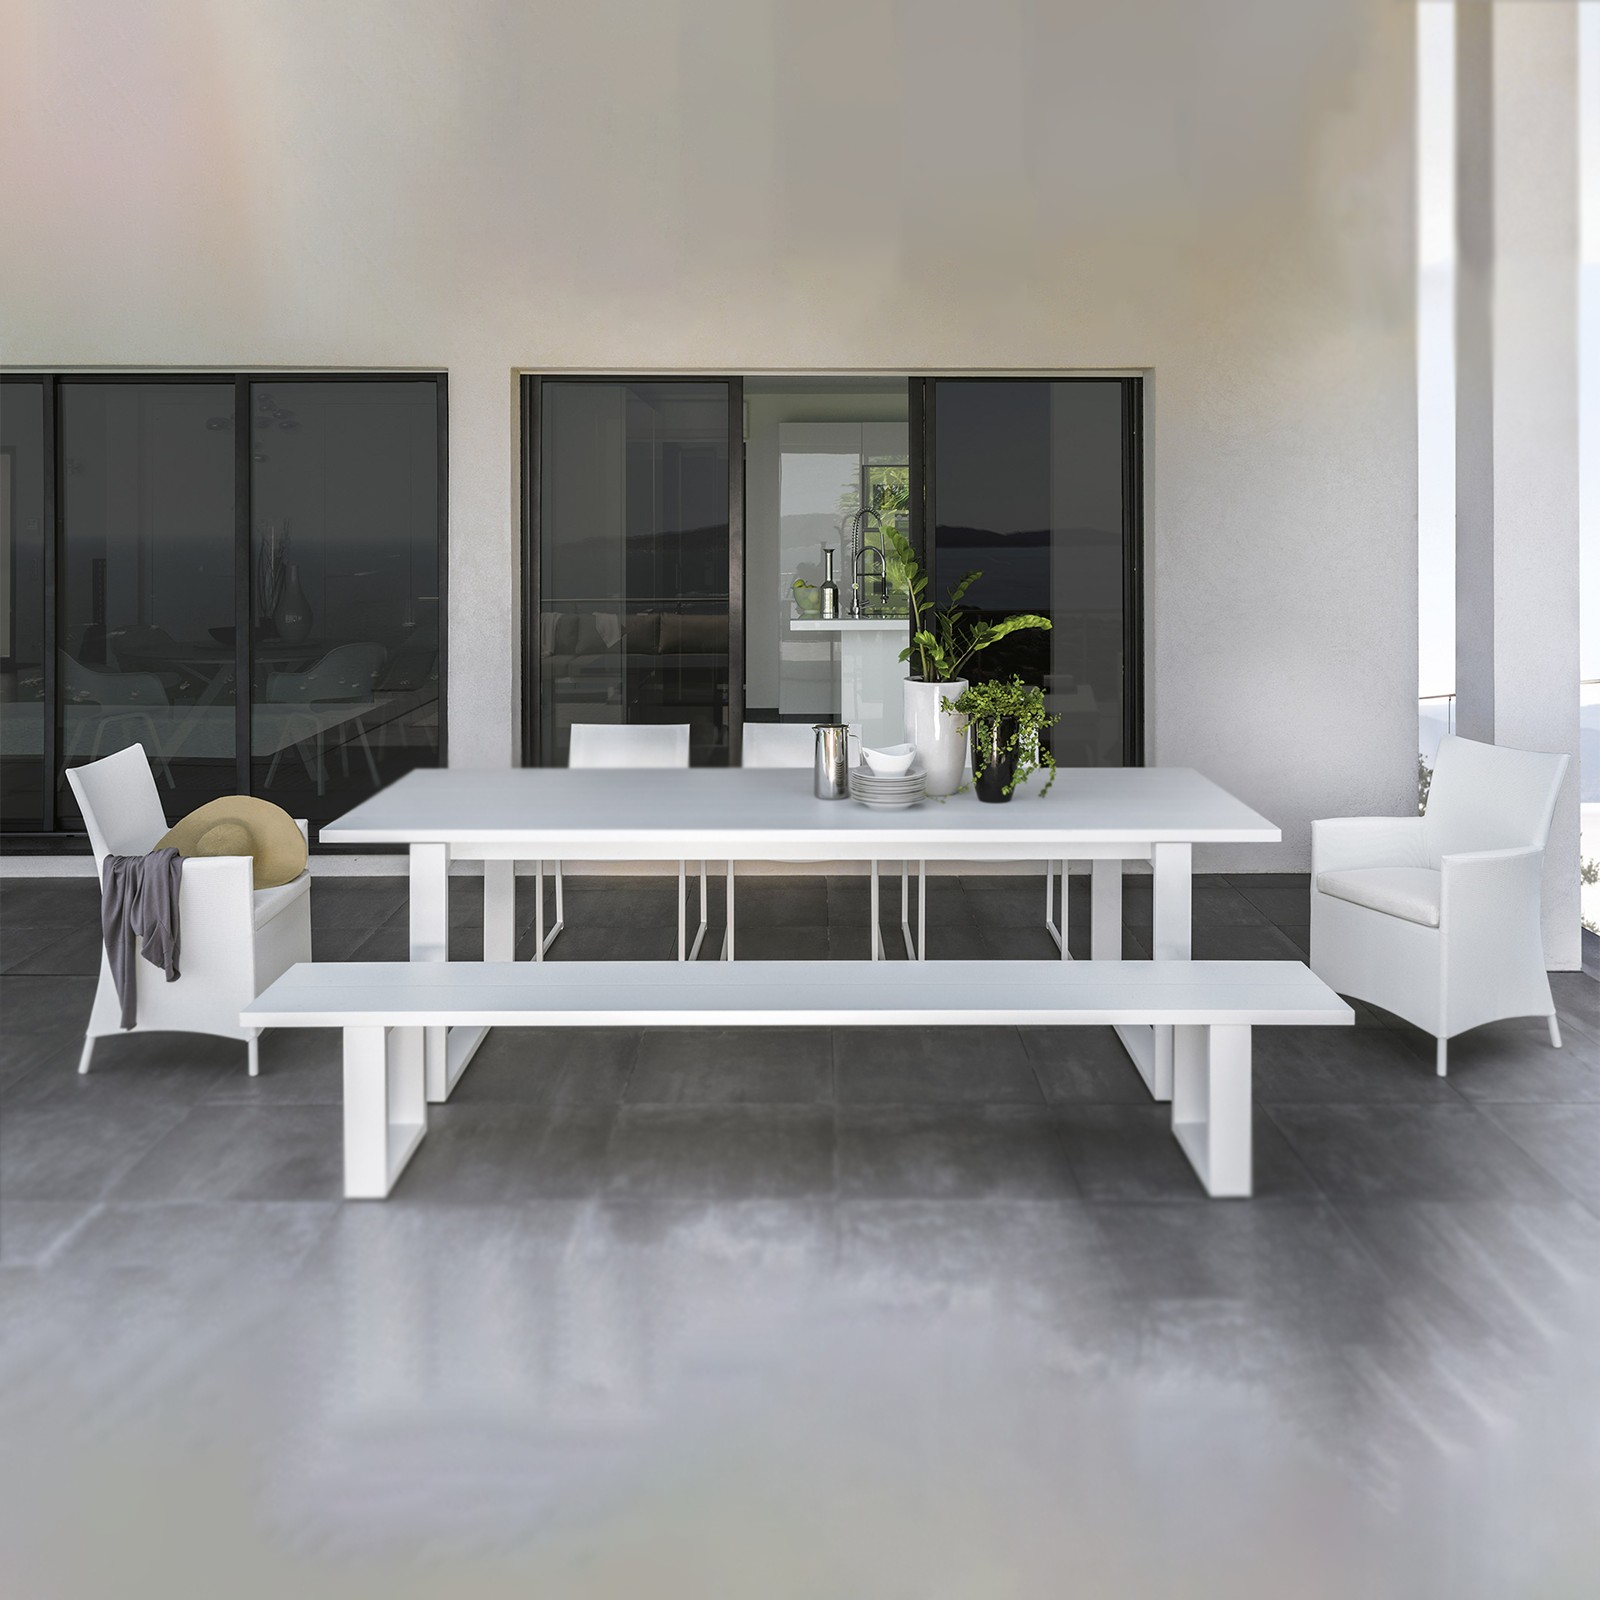 Set da pranzo completo di 6 sedie + tavolo Alu White in alluminio per giardino